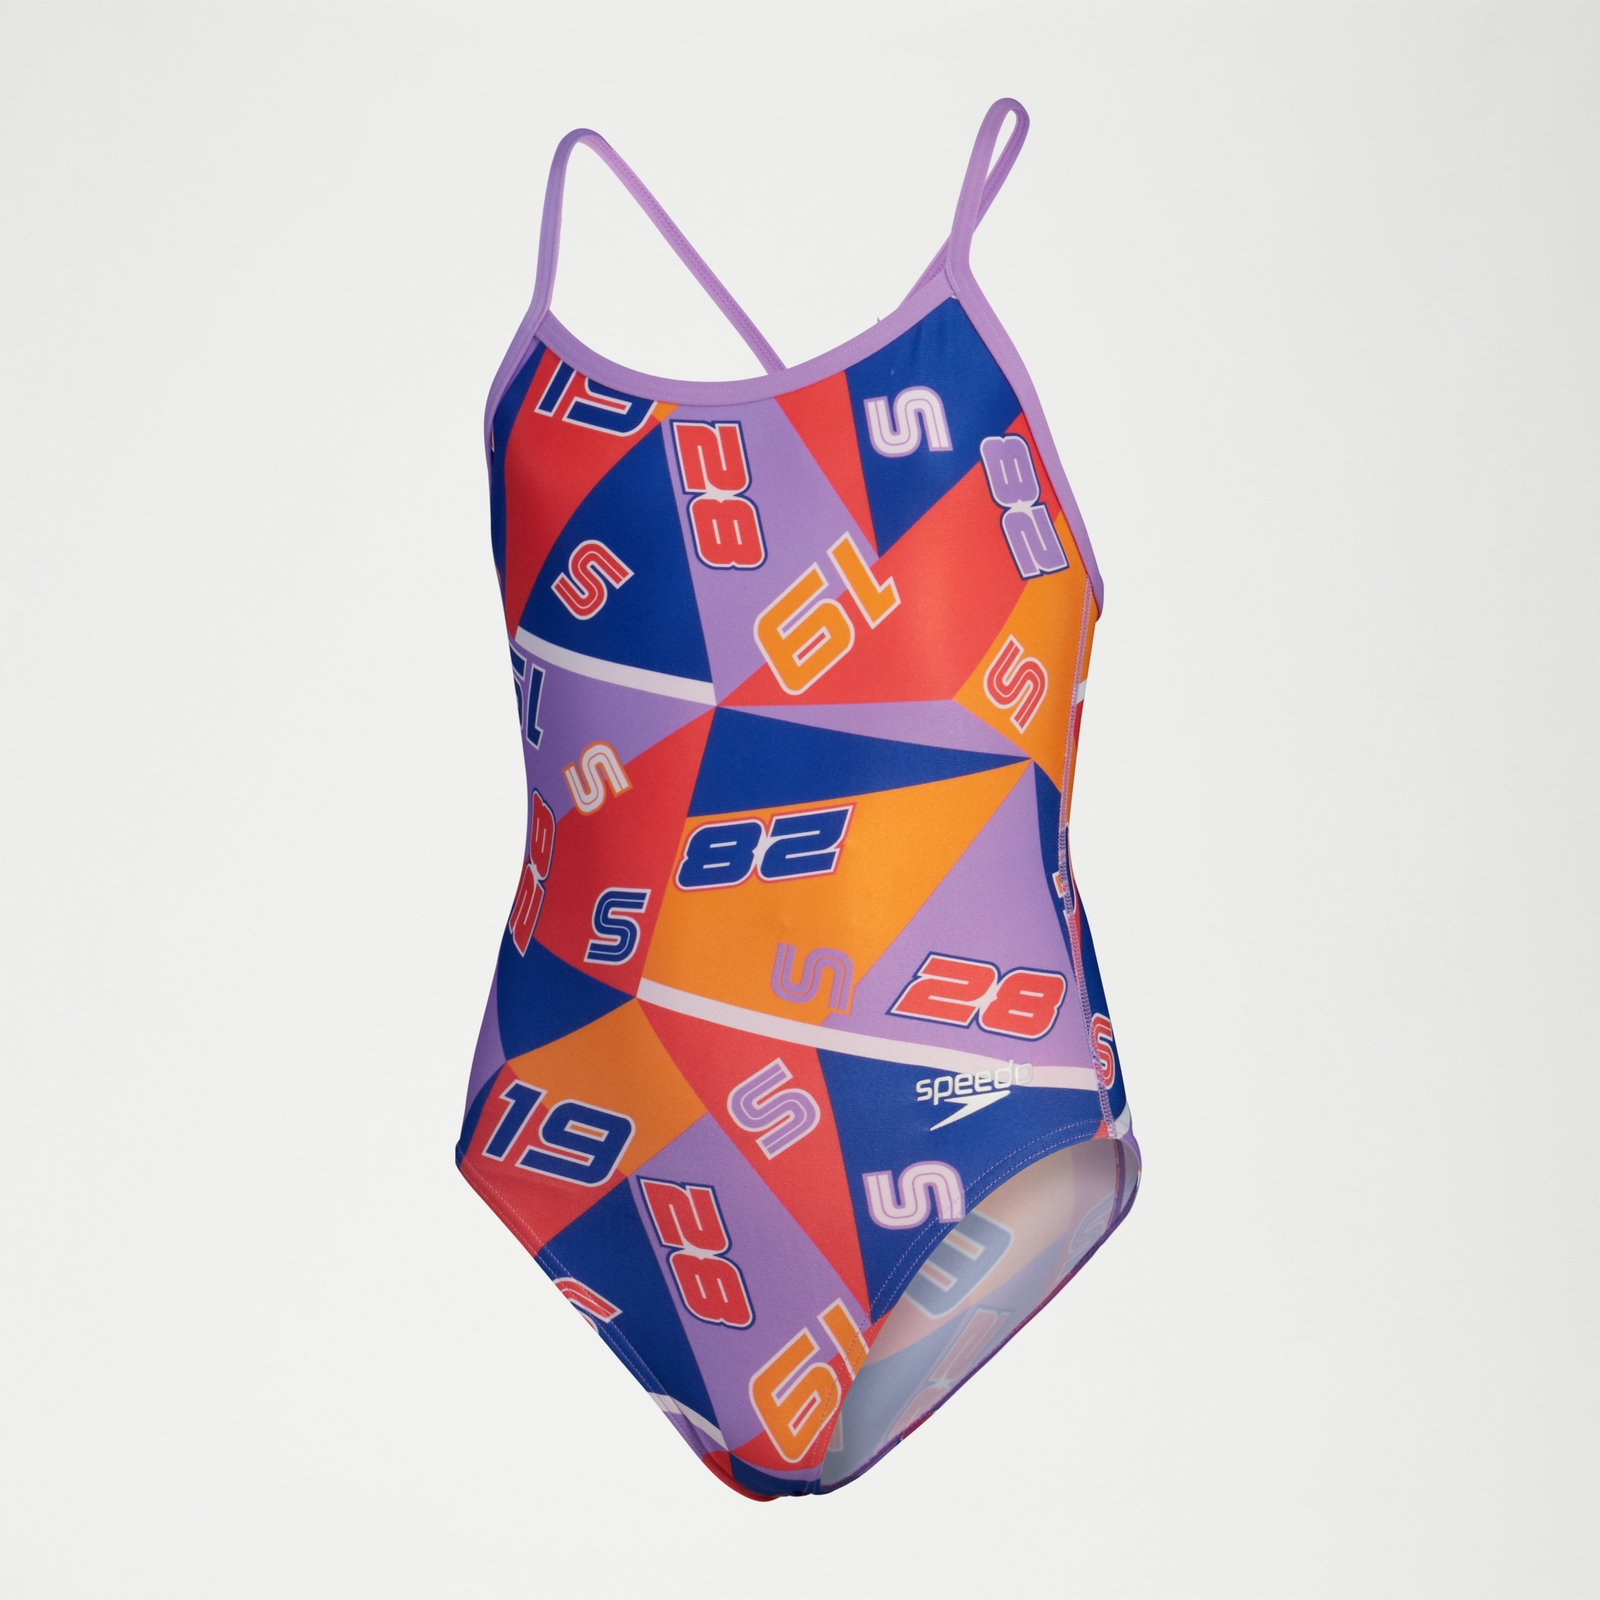 All-Over Digital-Badeanzug mit V-Rückenausschnitt für Mädchen Rot/Blau/Violett